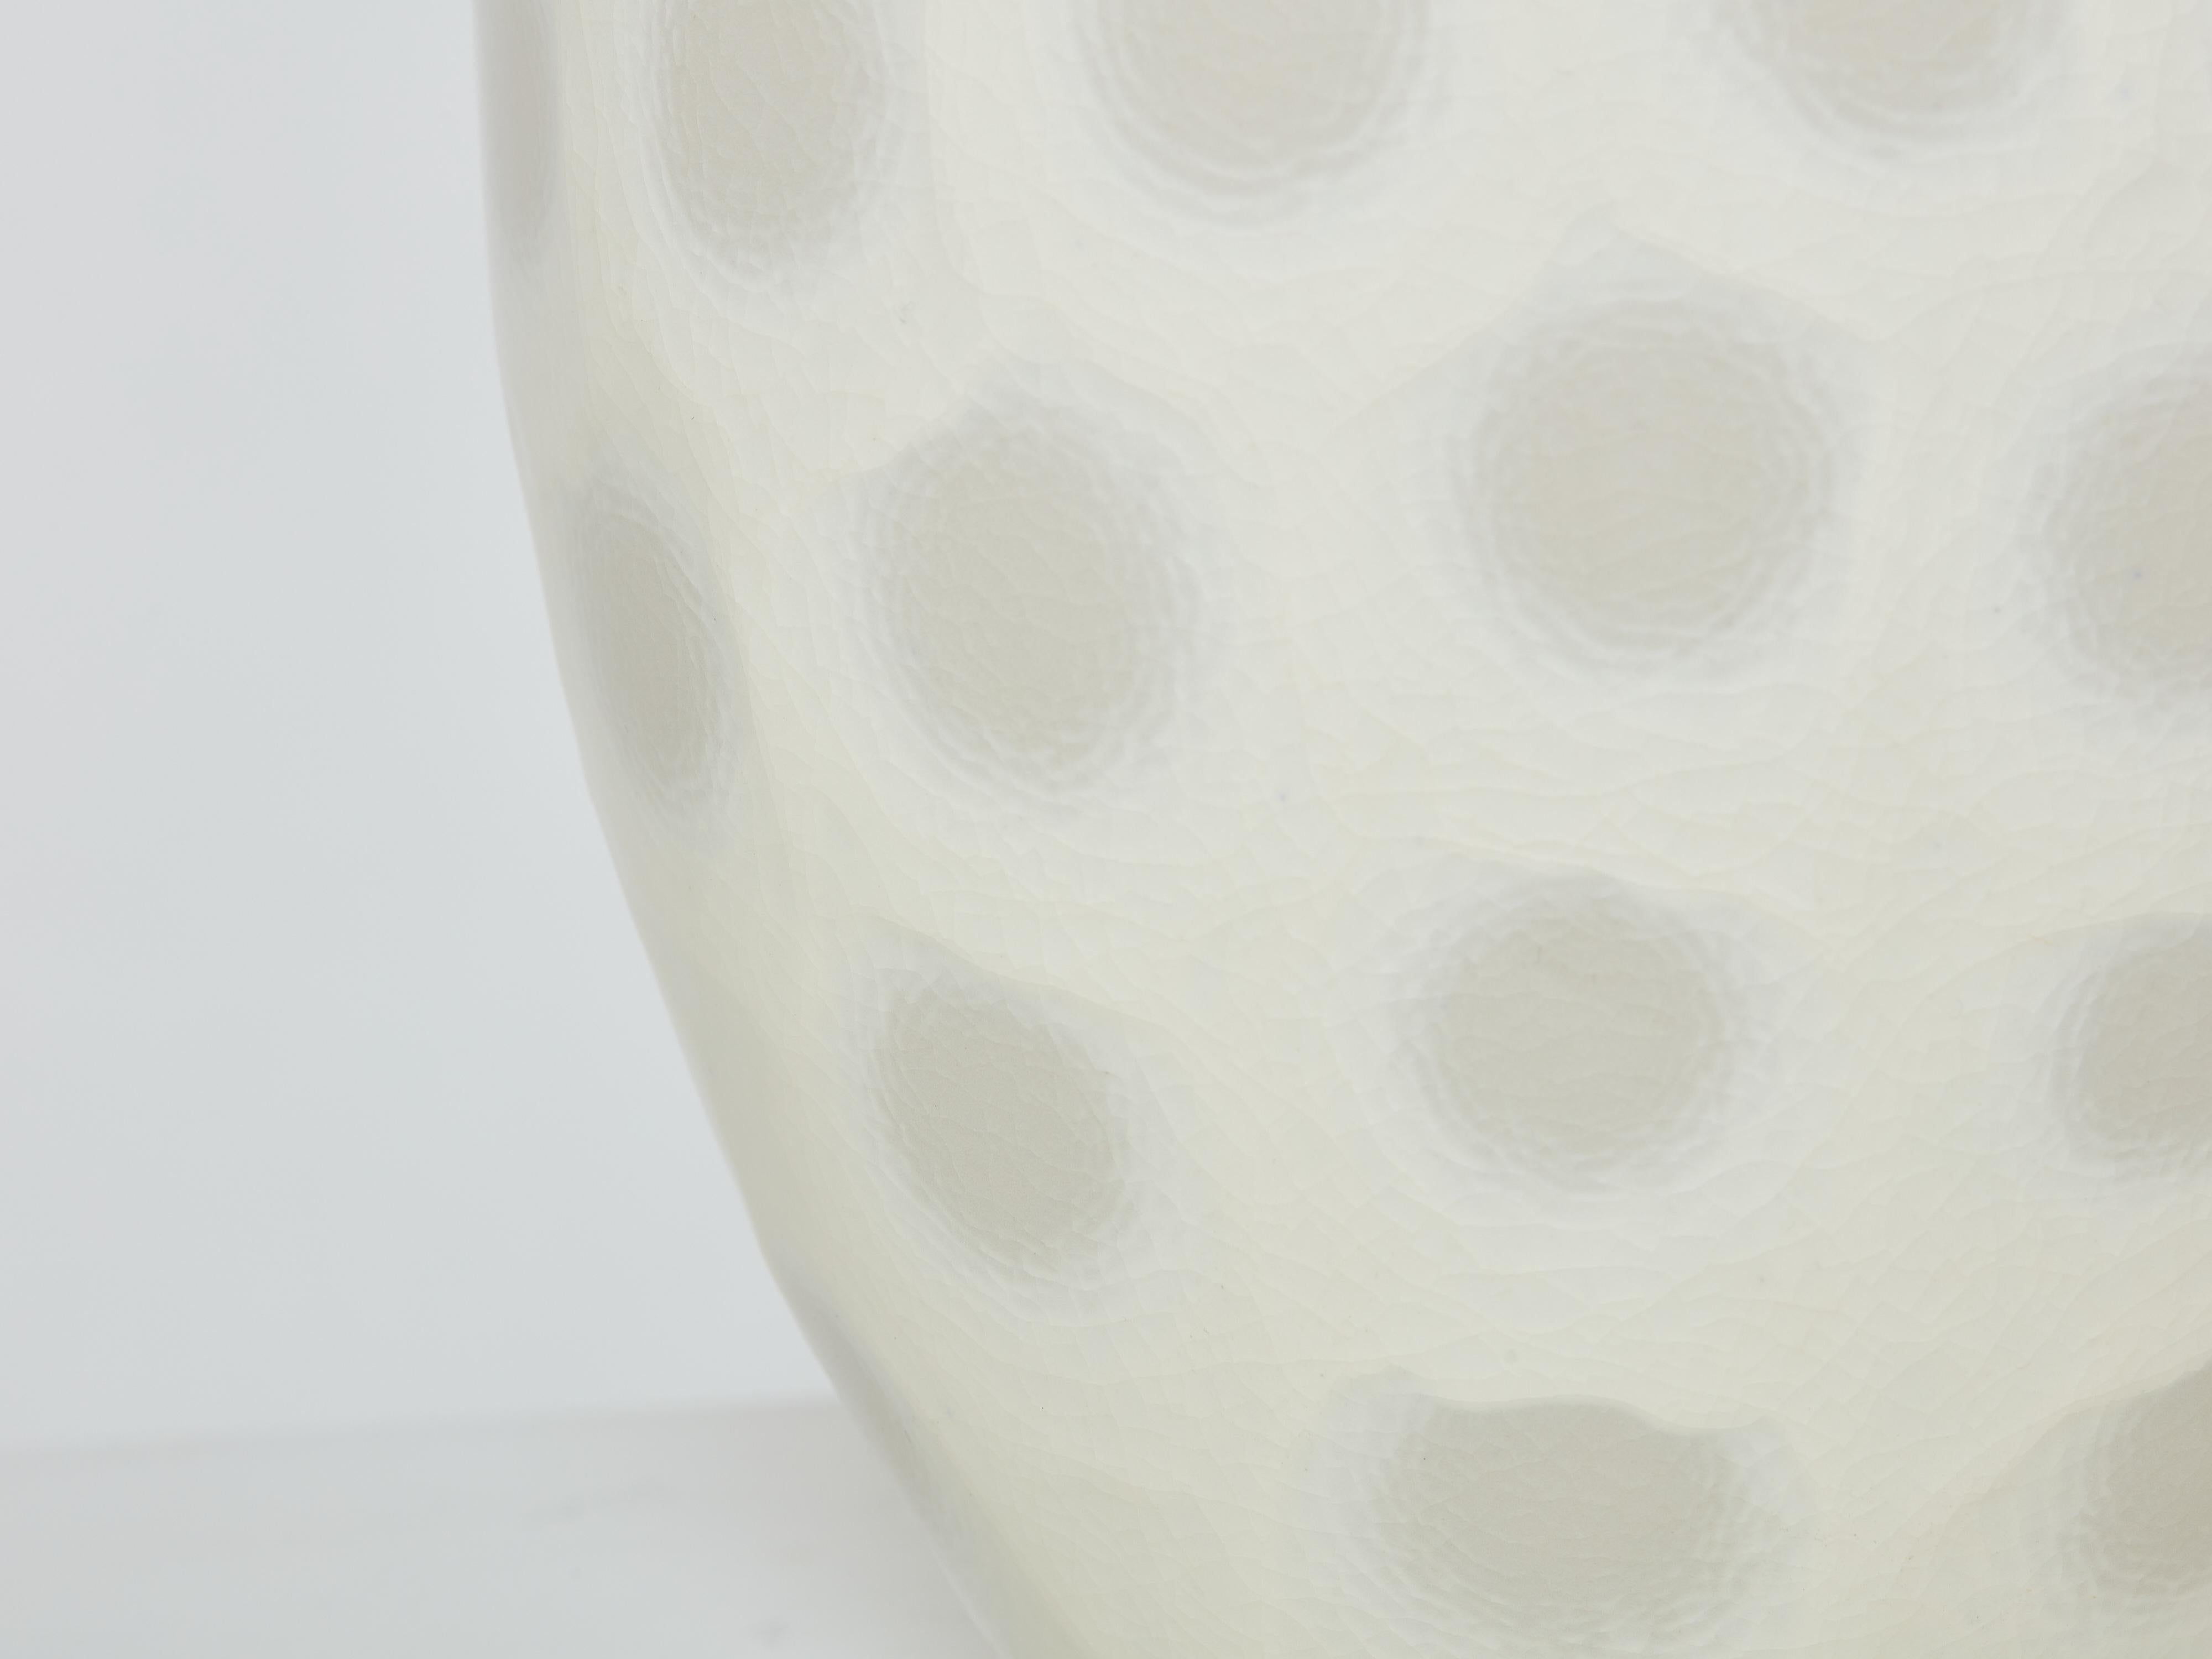 Magnifique grand vase en céramique à coquilles en verre craquelé blanc cassé, produit par Habitat dans les années 1980. Ce vase a une présence très décorative, et se trouve en parfait état.
